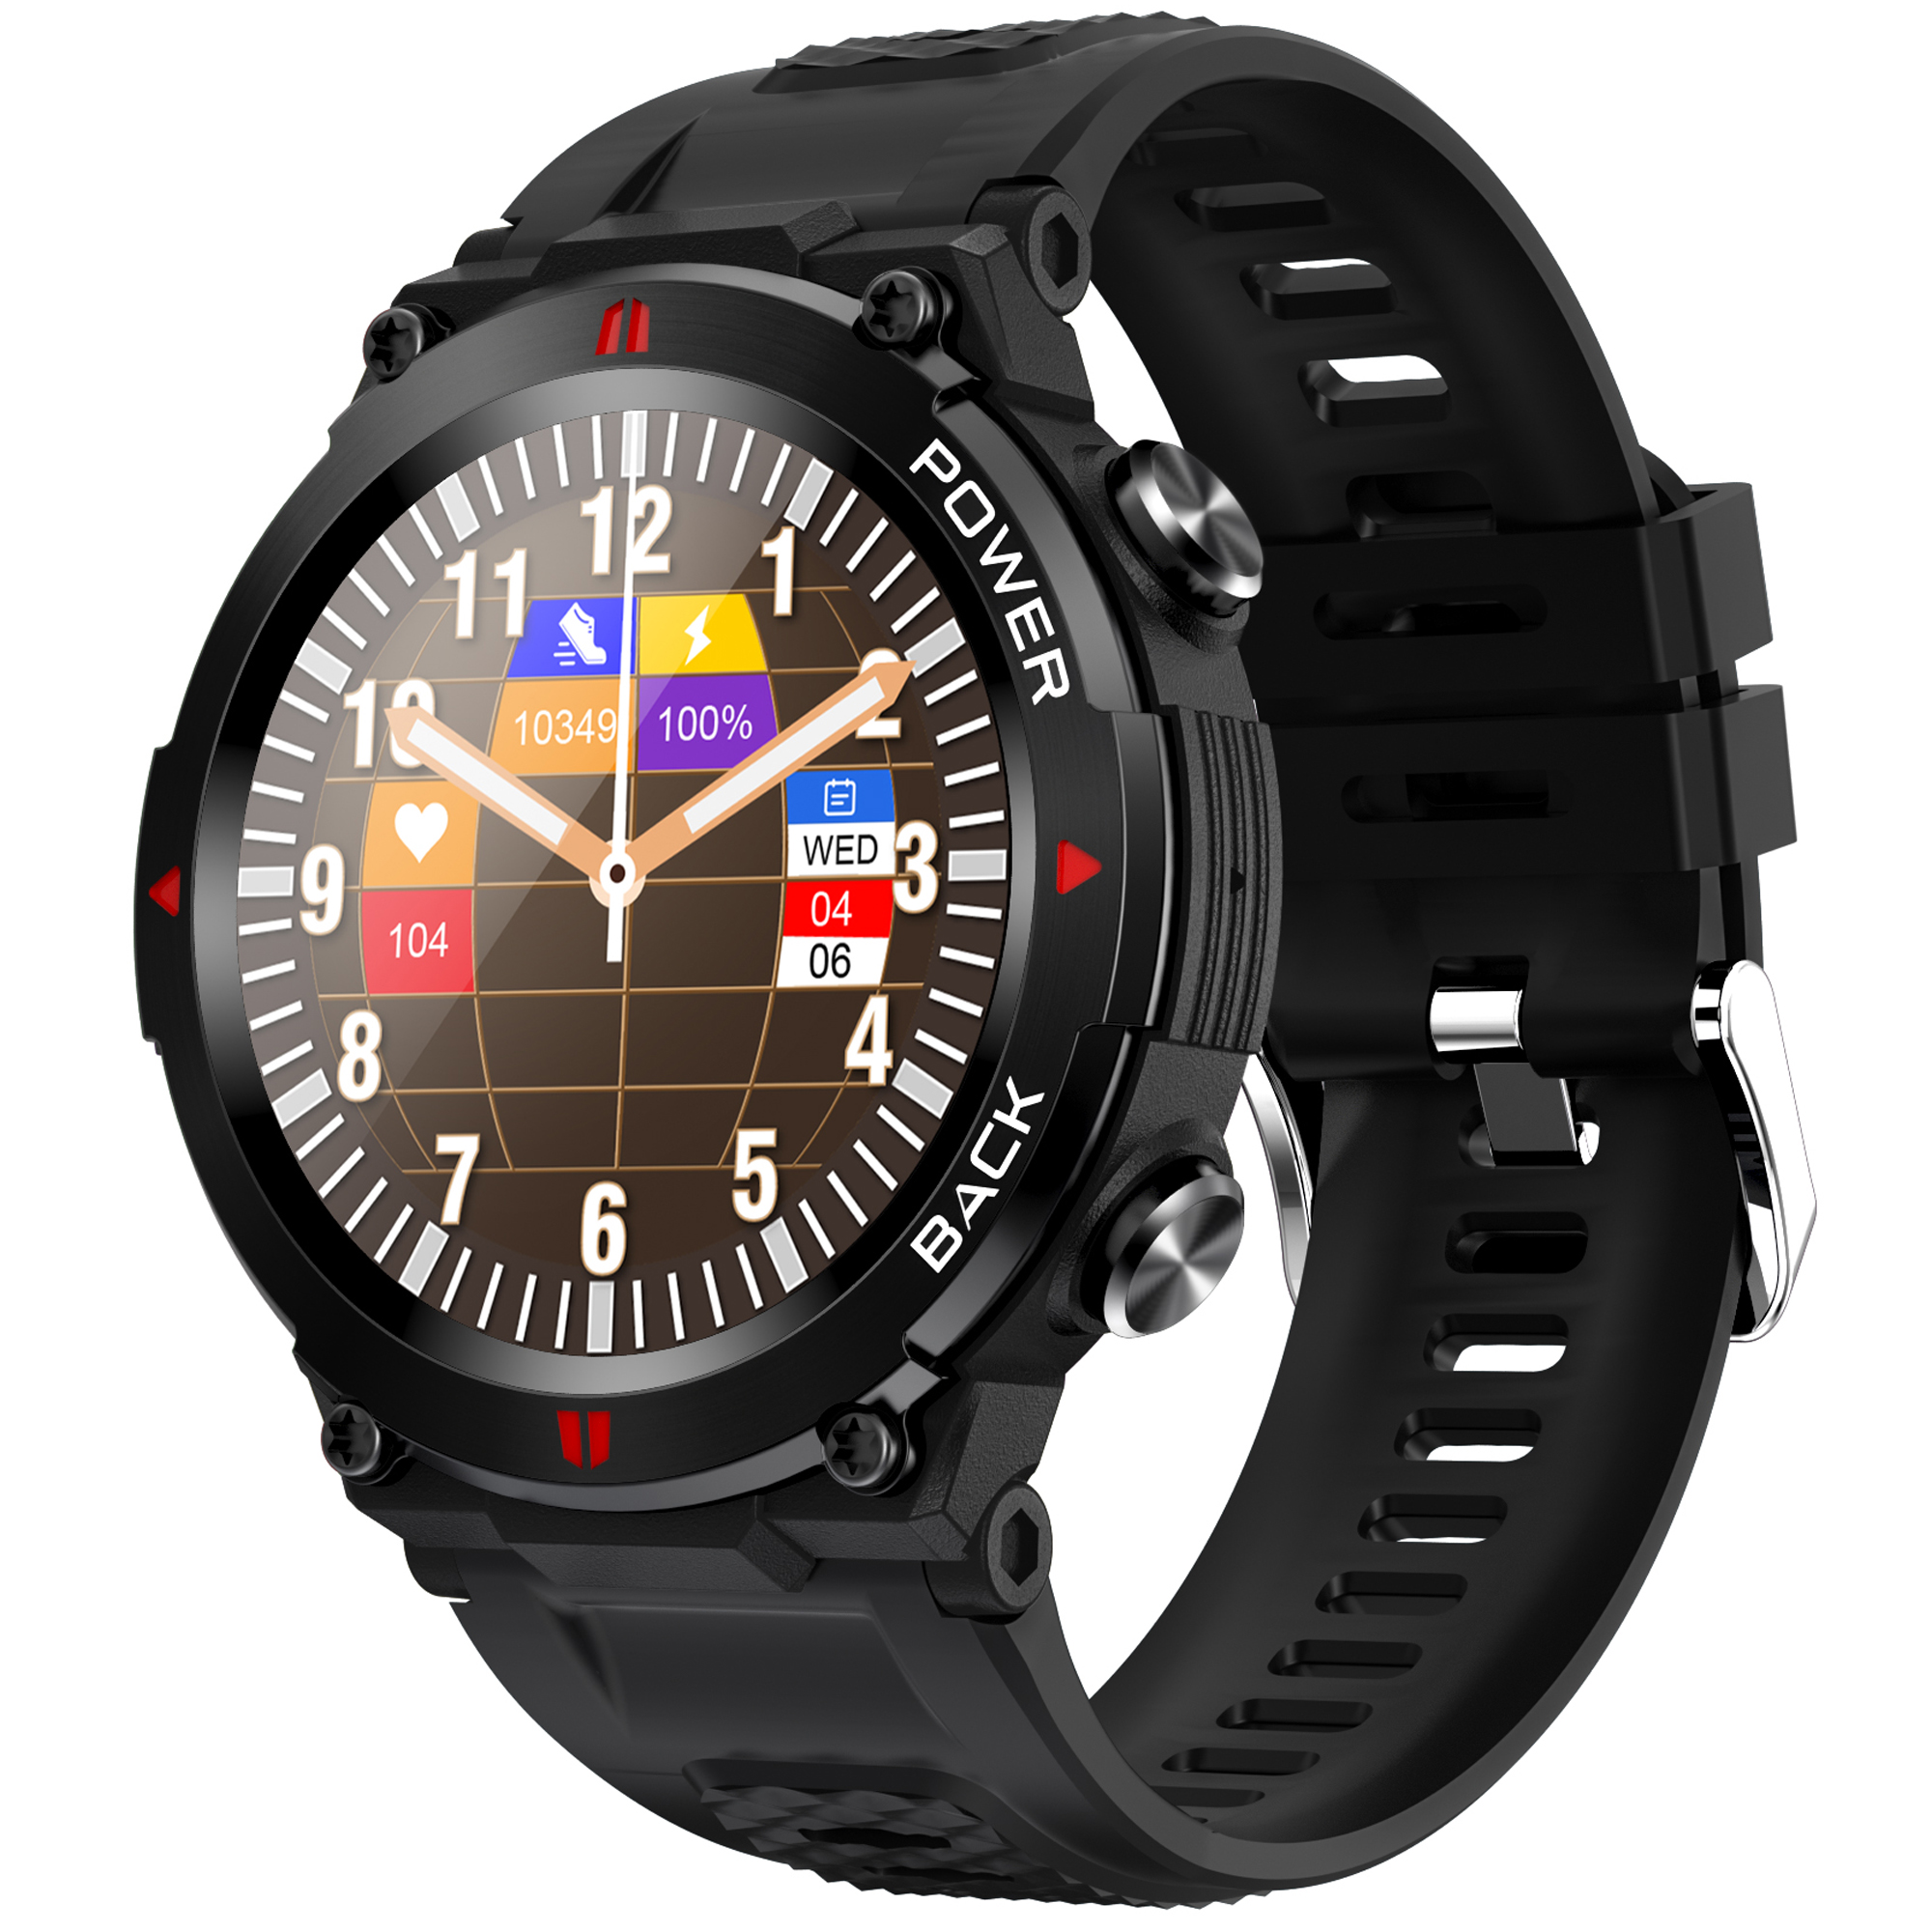 Ceas smartwatch barbati TechONE® A80, Ghost, Ultra Rezistent, Stical Gorilla, IP68, apel bluetooth HD, multi sport, ritm cardiac multi point, tensiune, oxigen, difuzor, notificari, IP68, negru